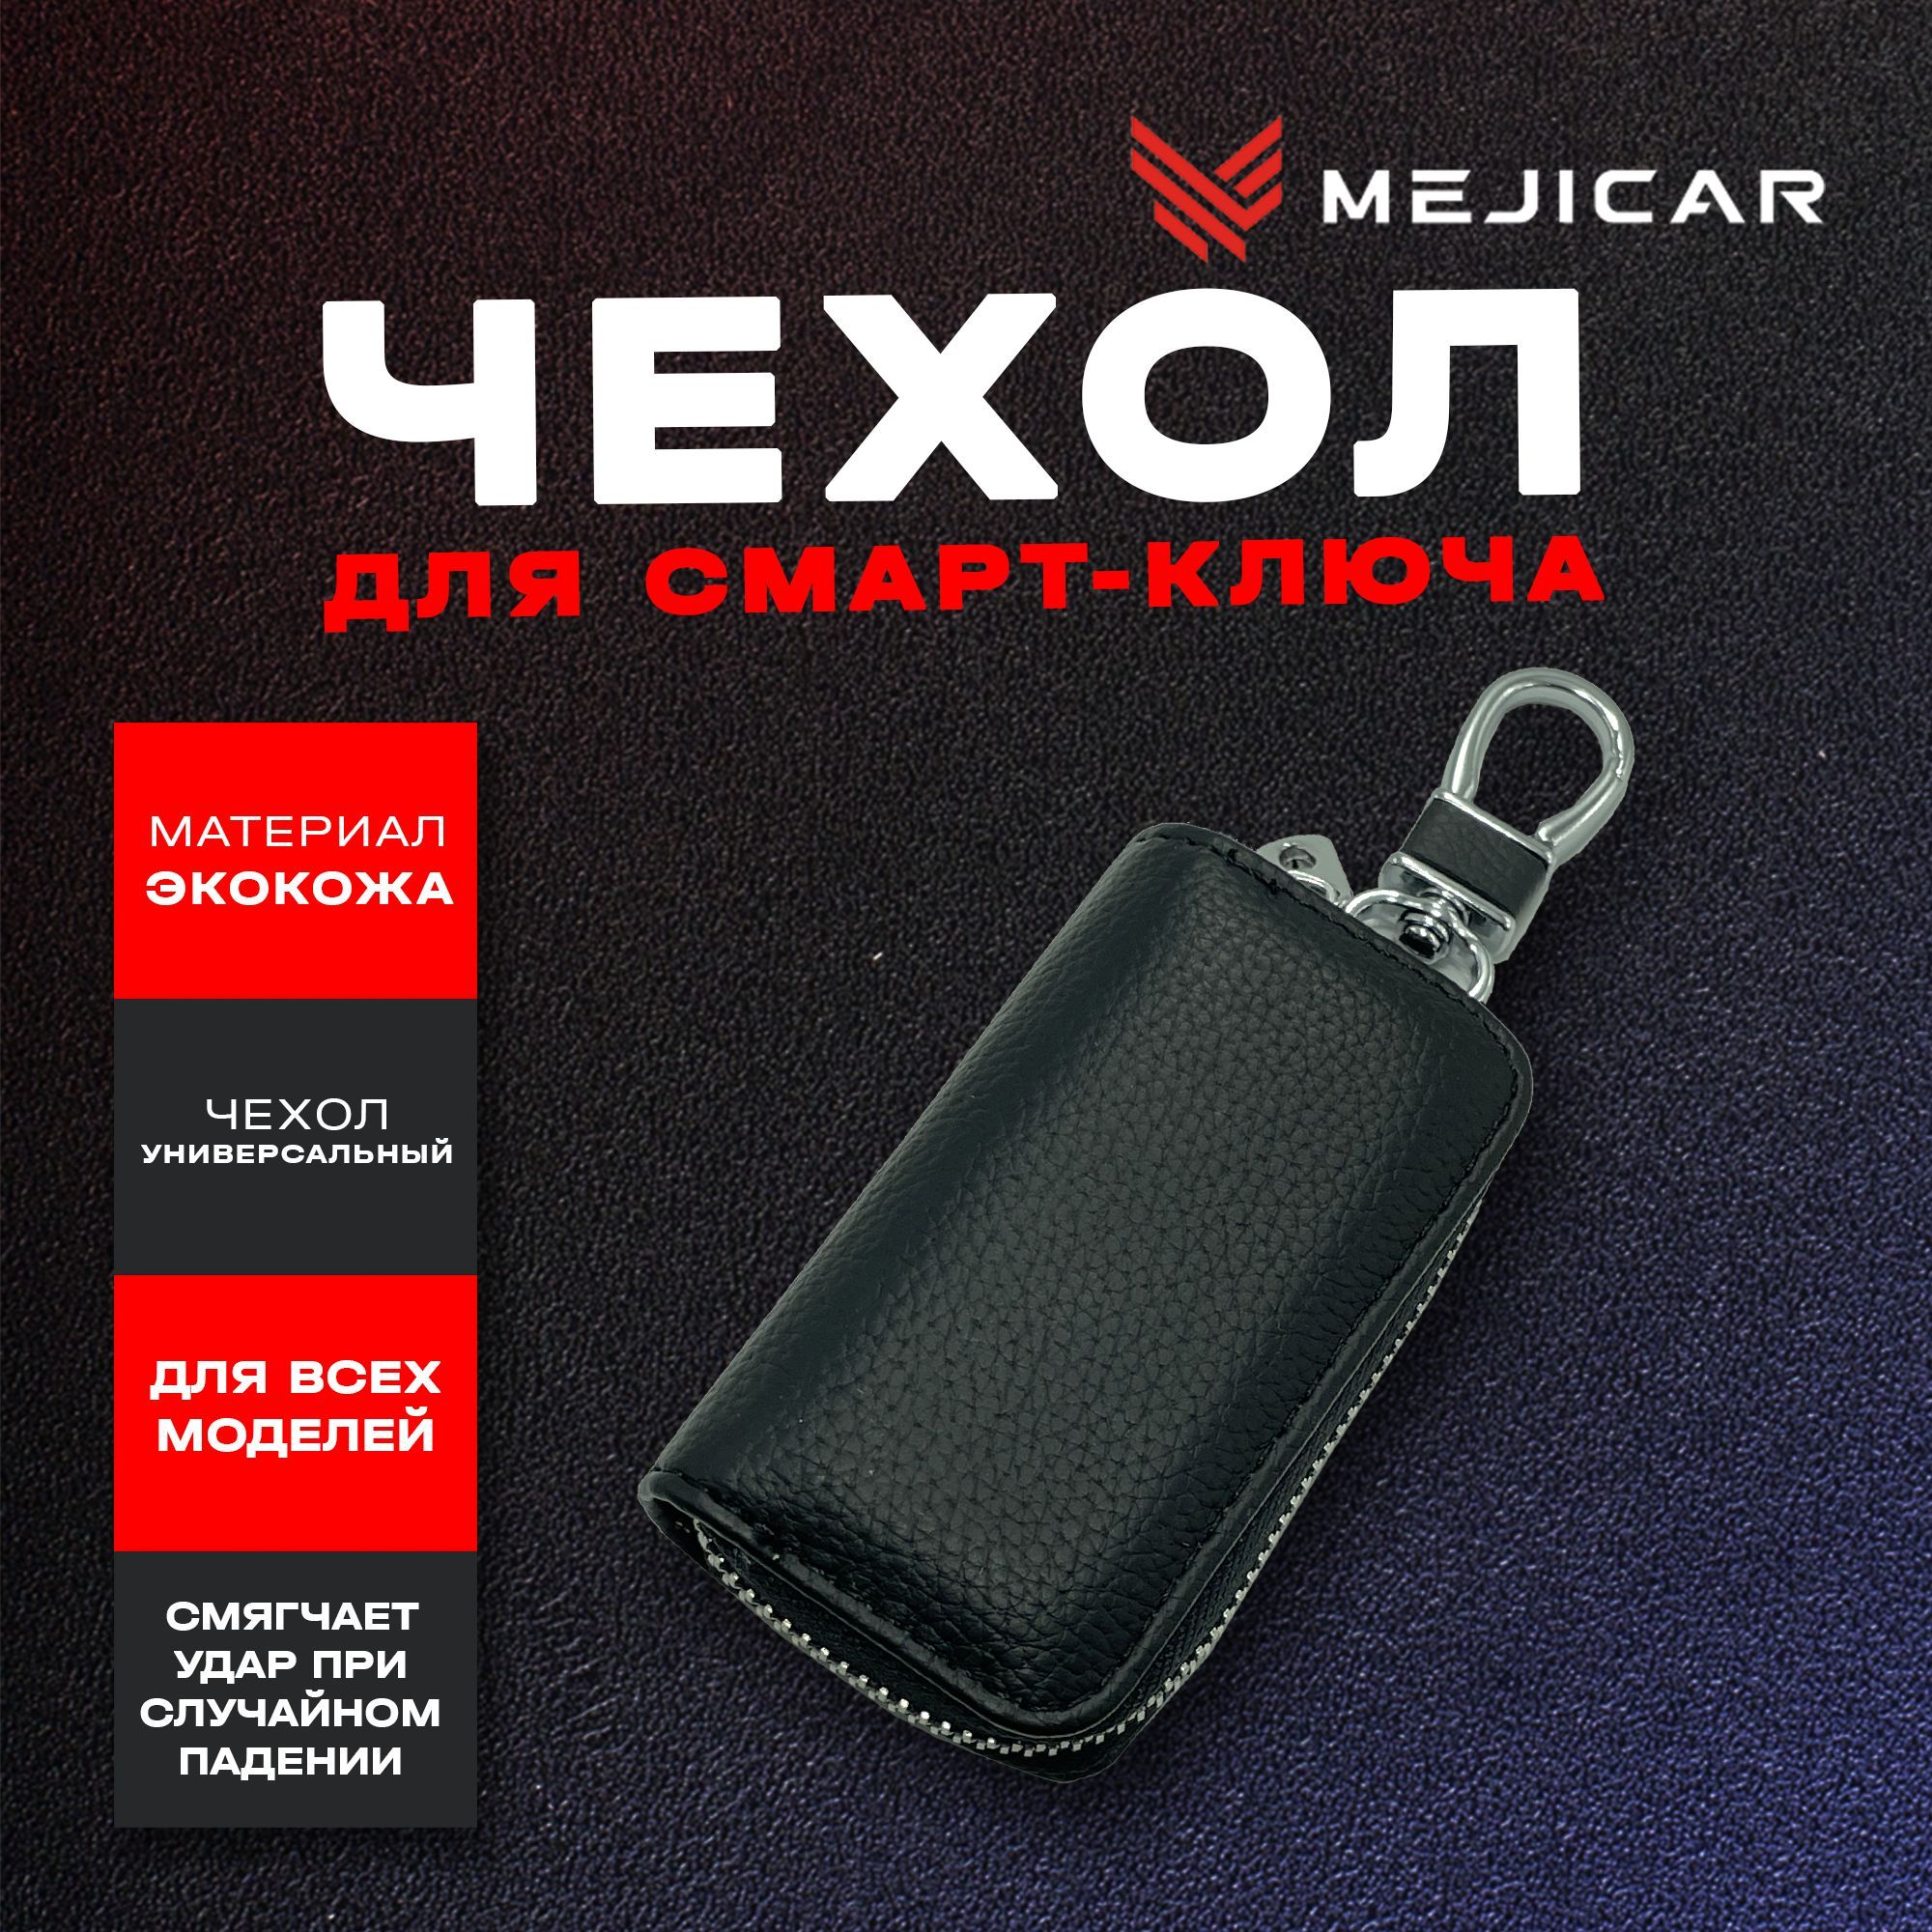 Чехол-ключница кожаная для ключа Без Лого - купить в Москве, цены на Мегамаркет | 100064286304